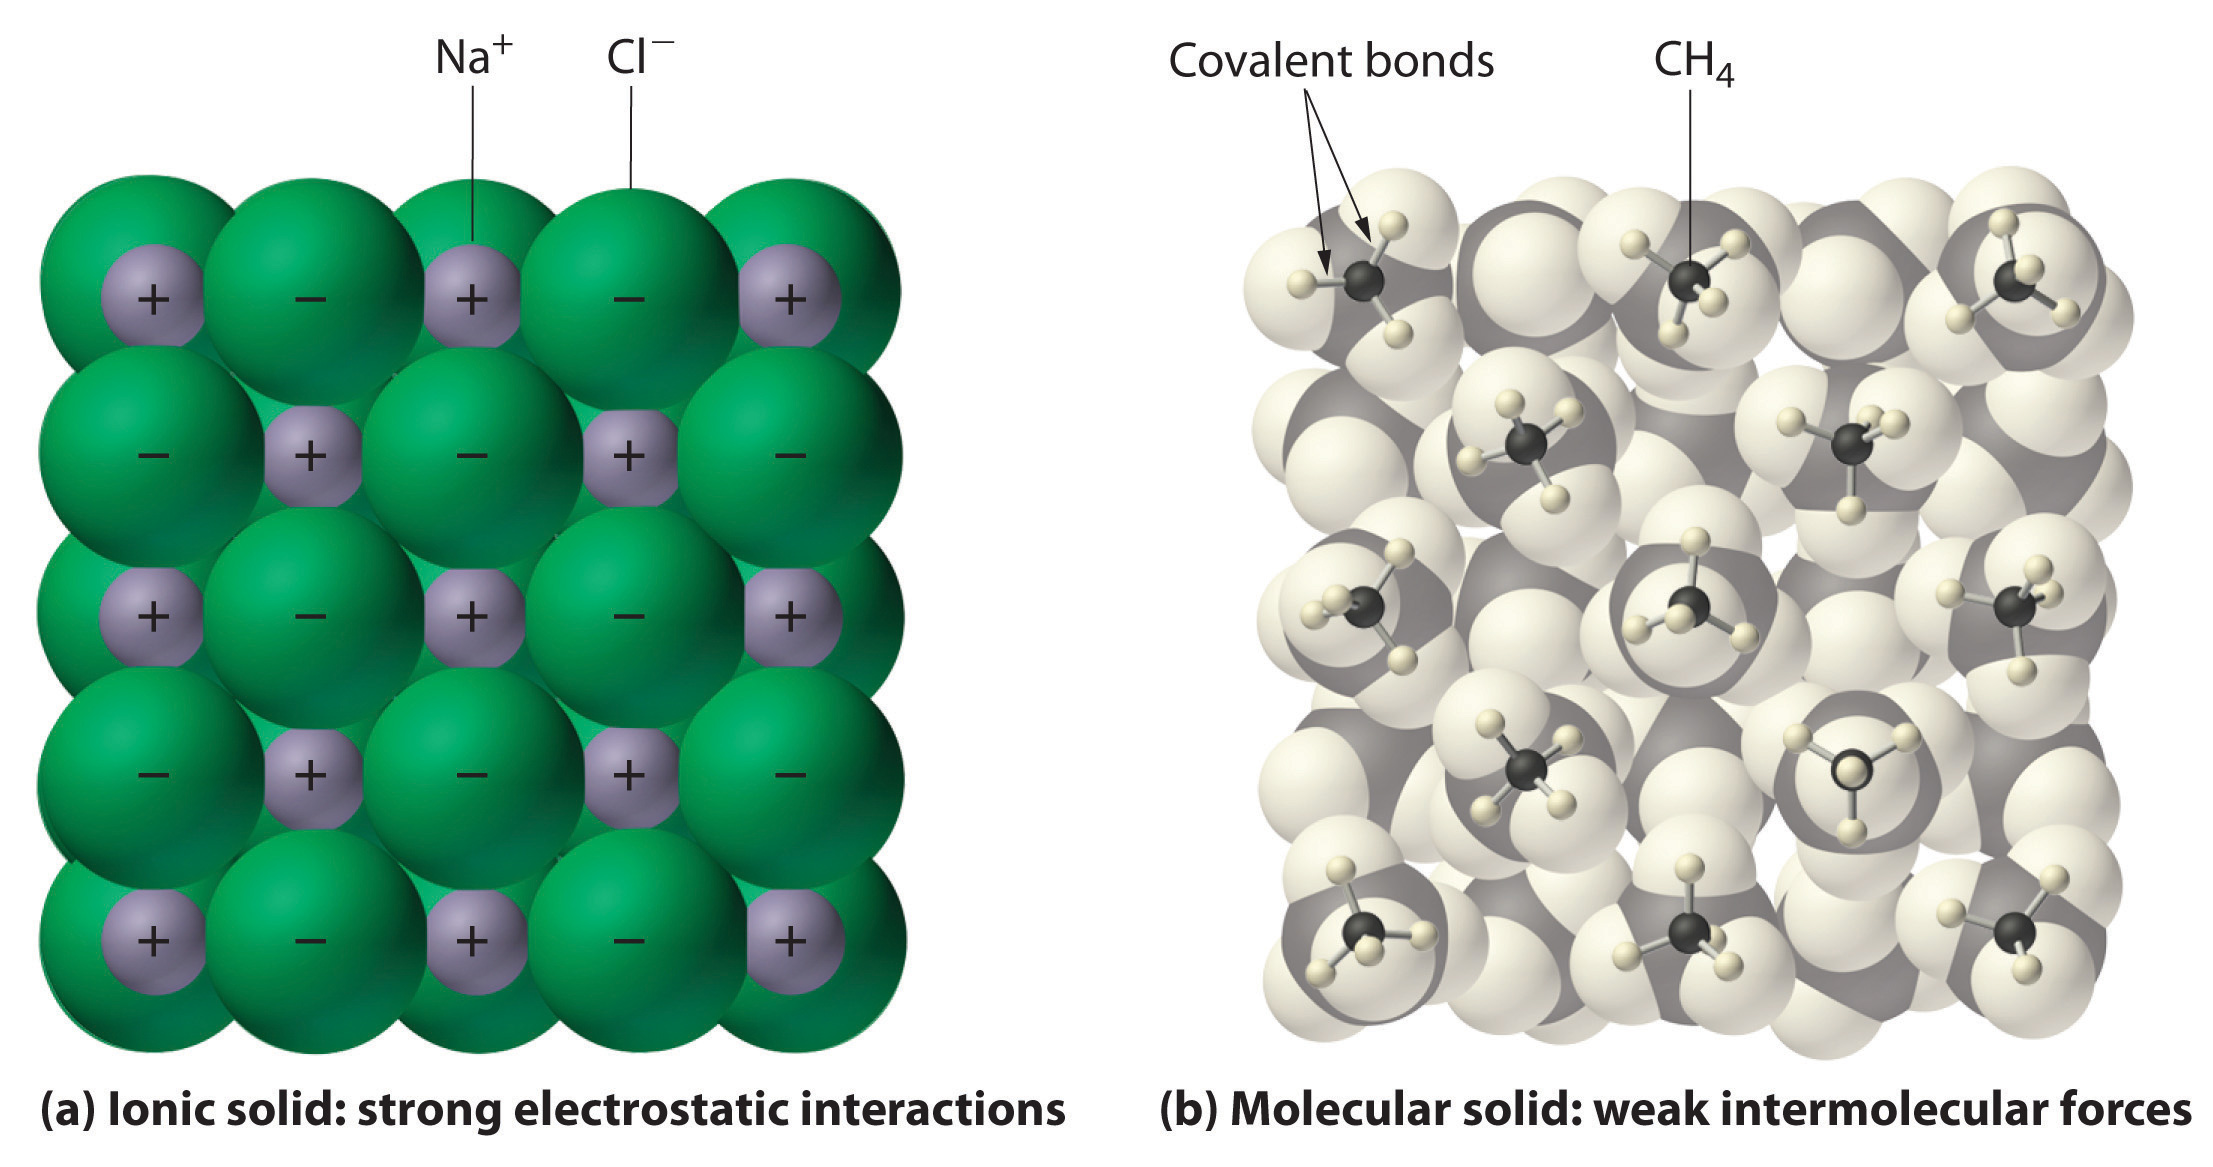 Sólidos iónicos, como NaCl, como fuertes interacciones electrostáticas. Los sólidos moleculares, como el CH4, tienen fuerzas intermoleculares débiles.